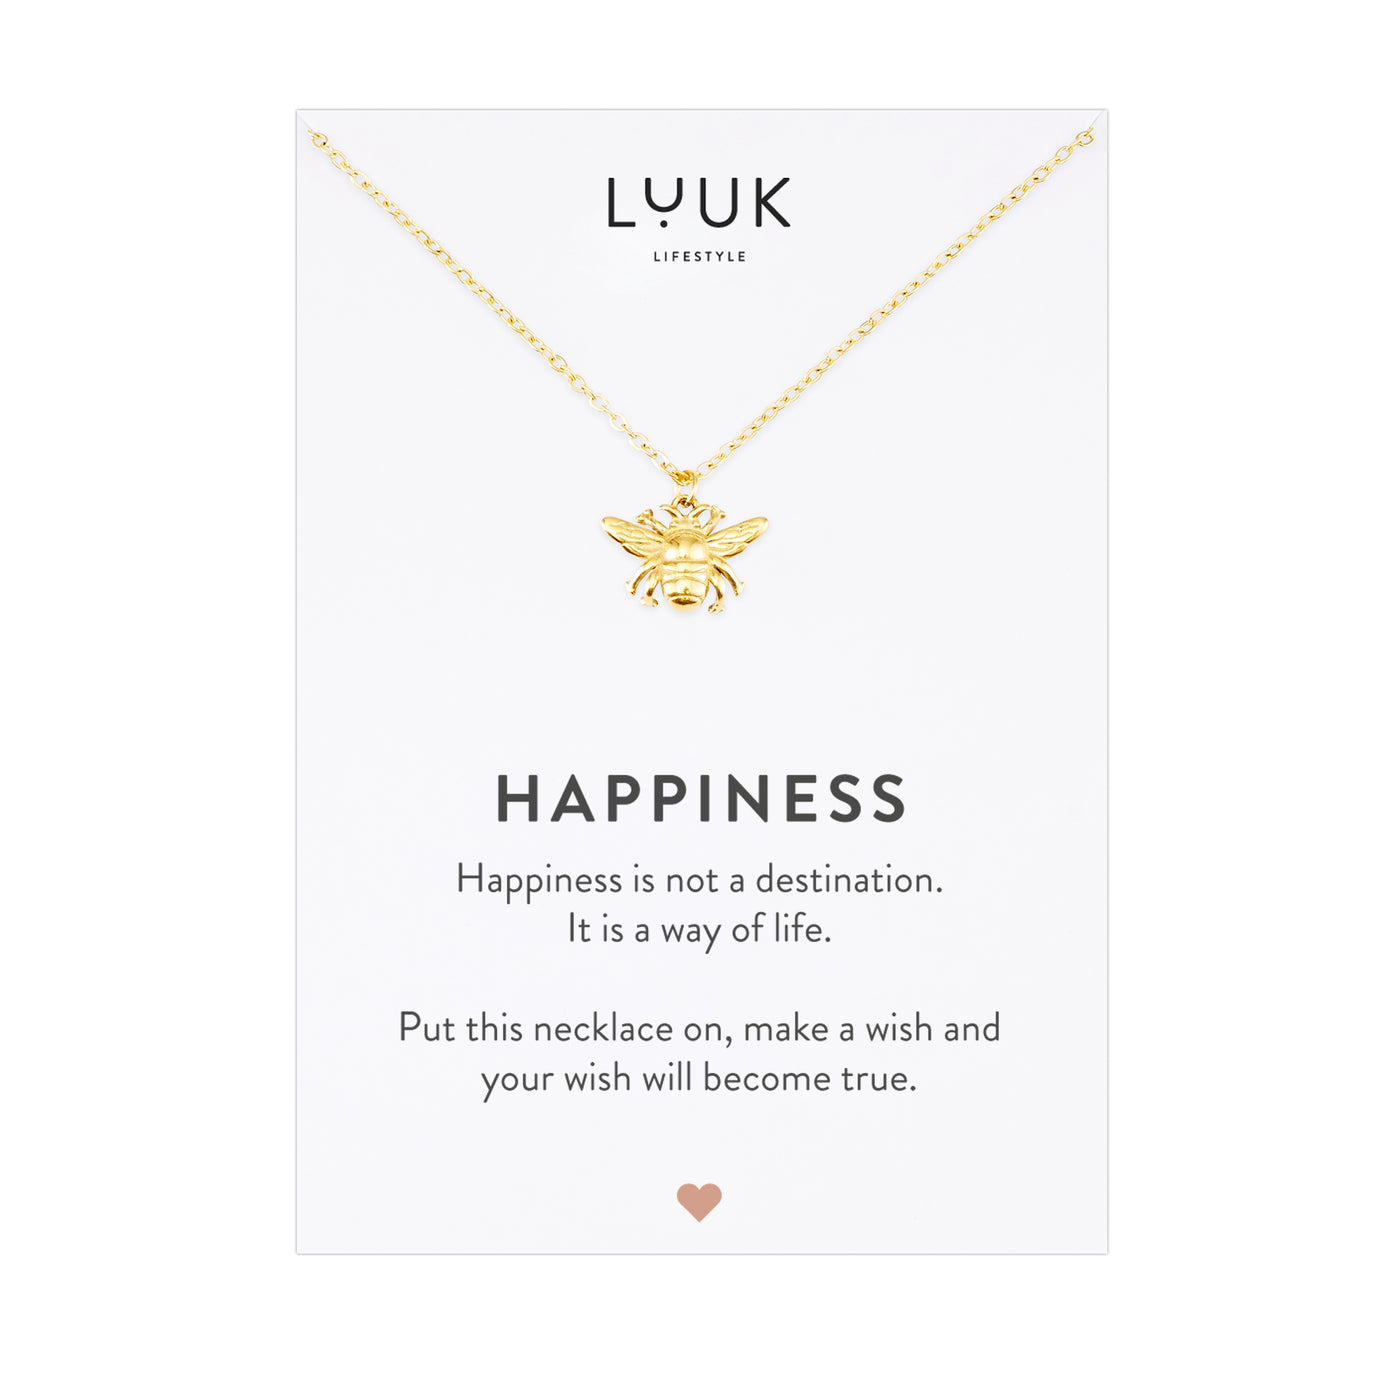 Goldene Halskette mit Bienen Anhänger auf Happiness Karte von der Brad Luuk Lifestyle